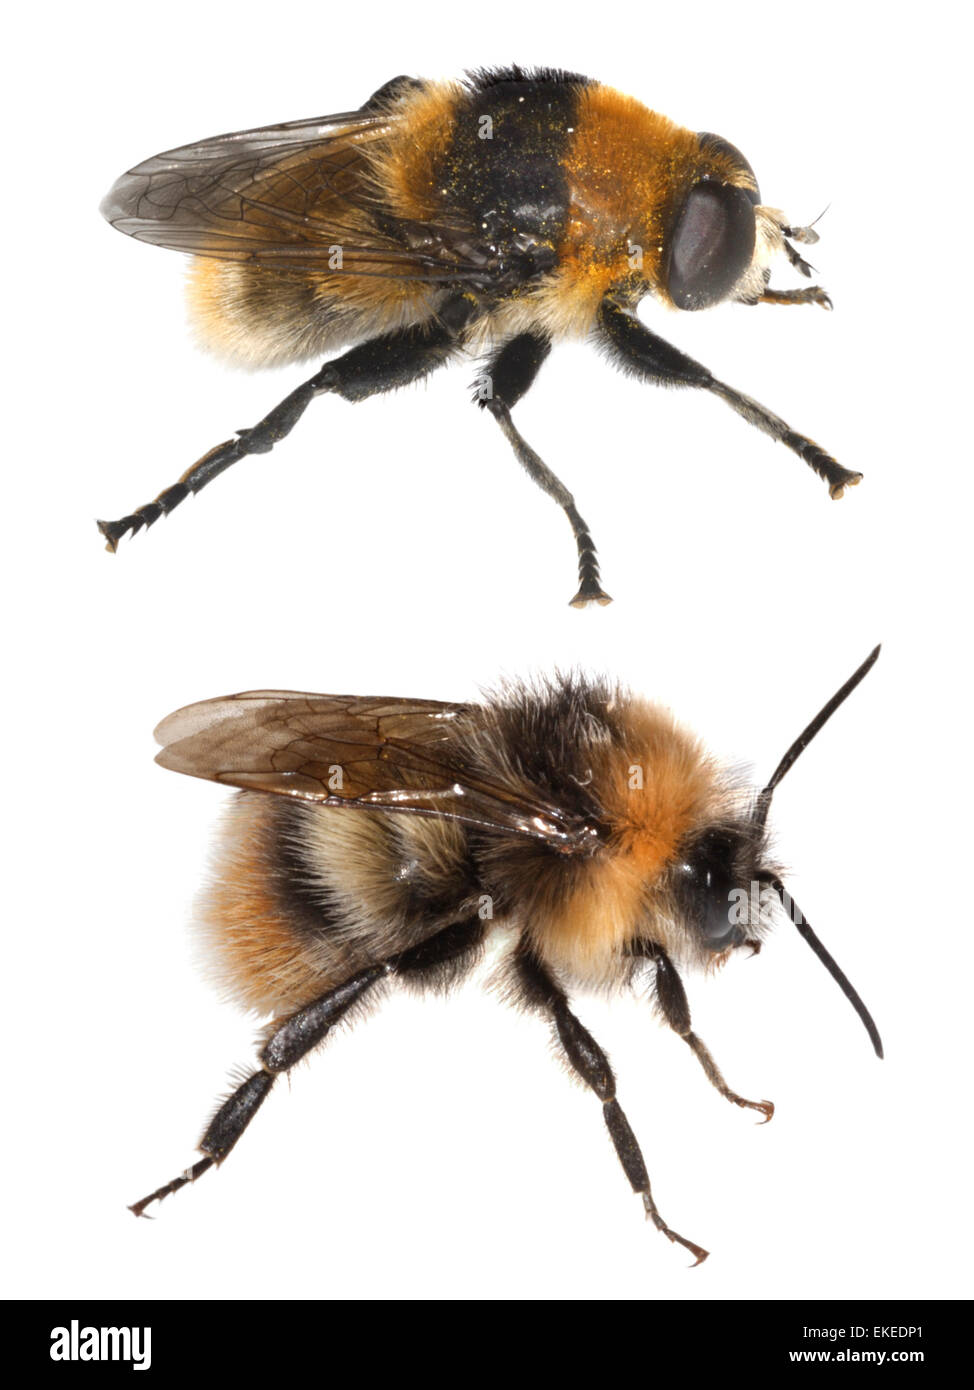 De abejorros Bombus lucorum (inferior) y hoverfly imitan Volucella bombylans (arriba) Foto de stock